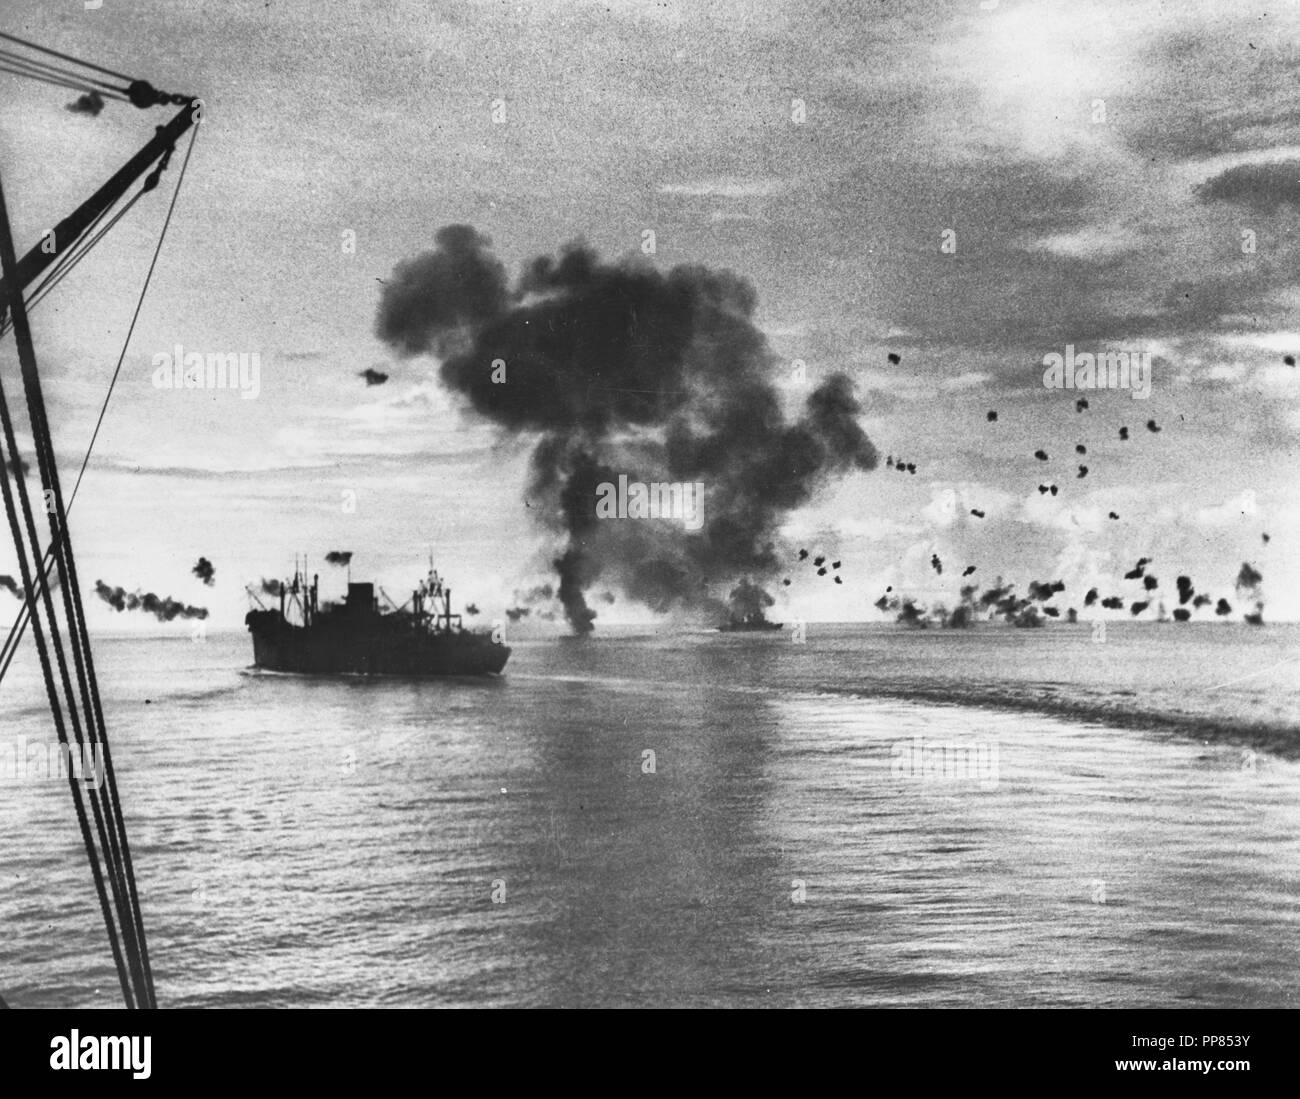 La battaglia navale di Guadalcanal, 12-15 novembre 1942 - USS presidente Jackson (AP-37) manovrare sotto giapponese attacco aria off Guadalcanal, 12 novembre 1942. Sullo sfondo al centro è il fumo da un aereo nemico che aveva appena schiantato dopo la sovrastruttura di USS San Francisco (CA-38), che è via per la cottura a vapore nel centro a destra. Foto Stock